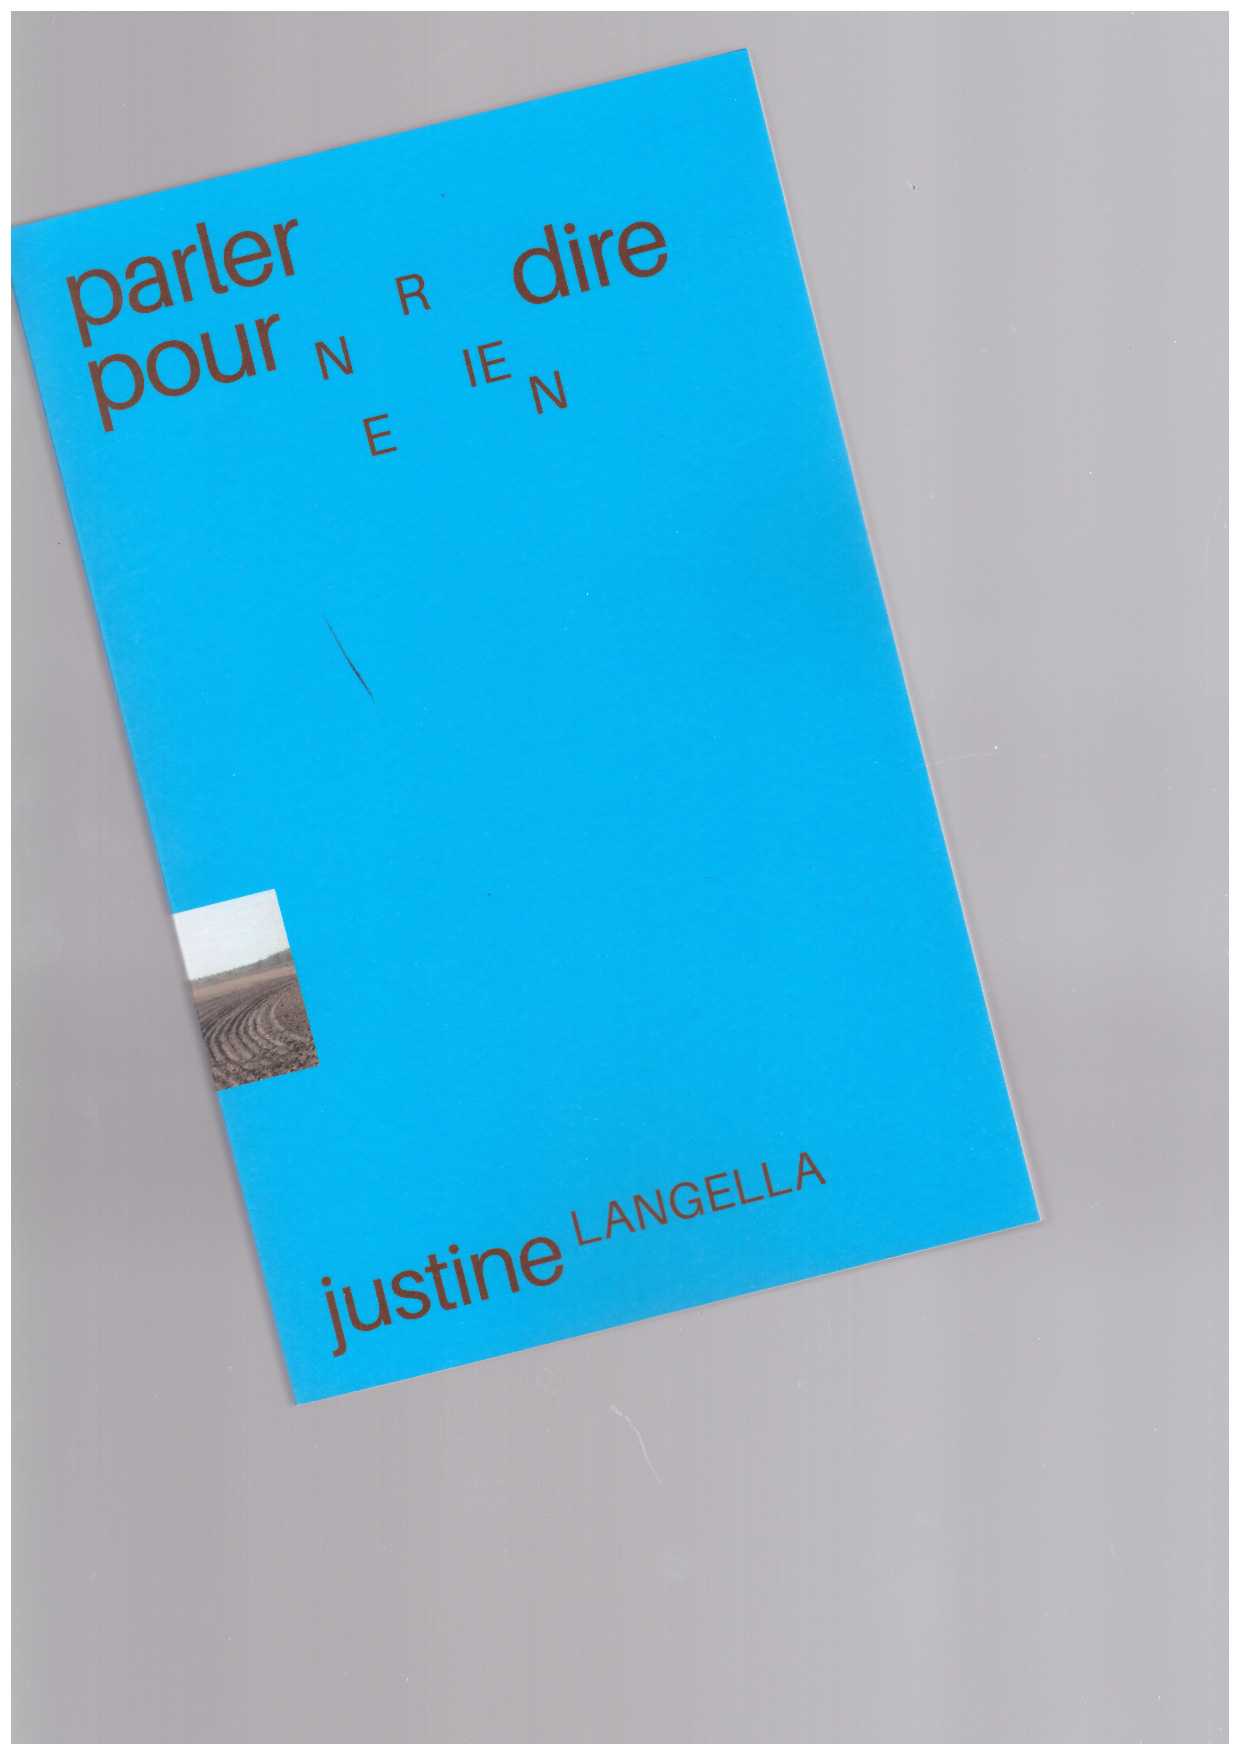 LANGELLA, Justine - Parler pour ne rien dire